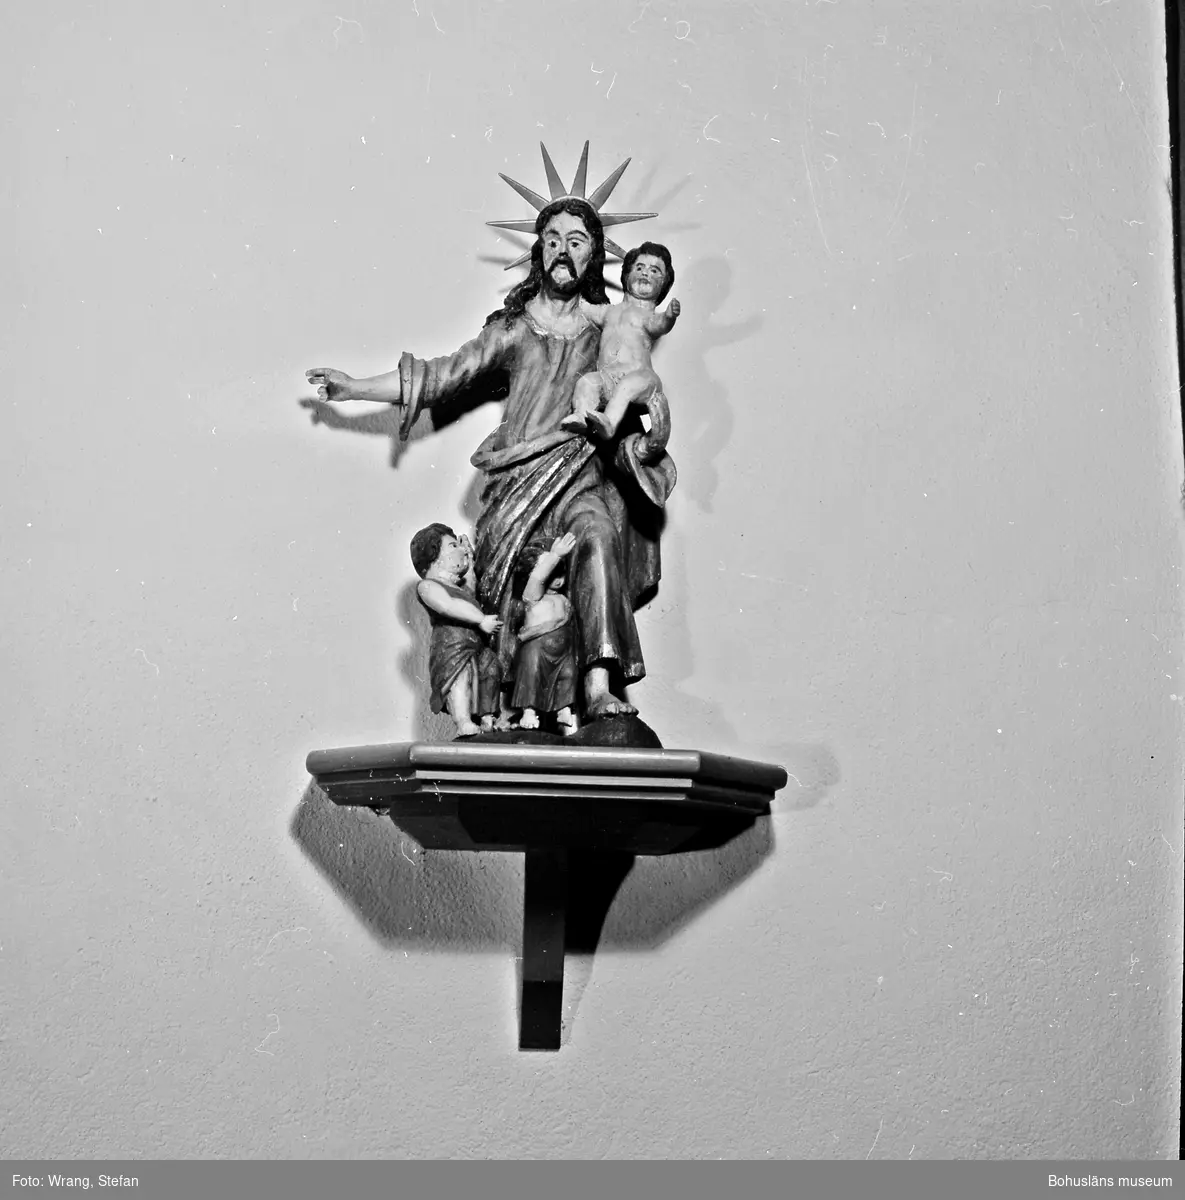 Text till bilden: "Bro kyrka. Dopskulptur, troligen av Marcus Jäger 1697".